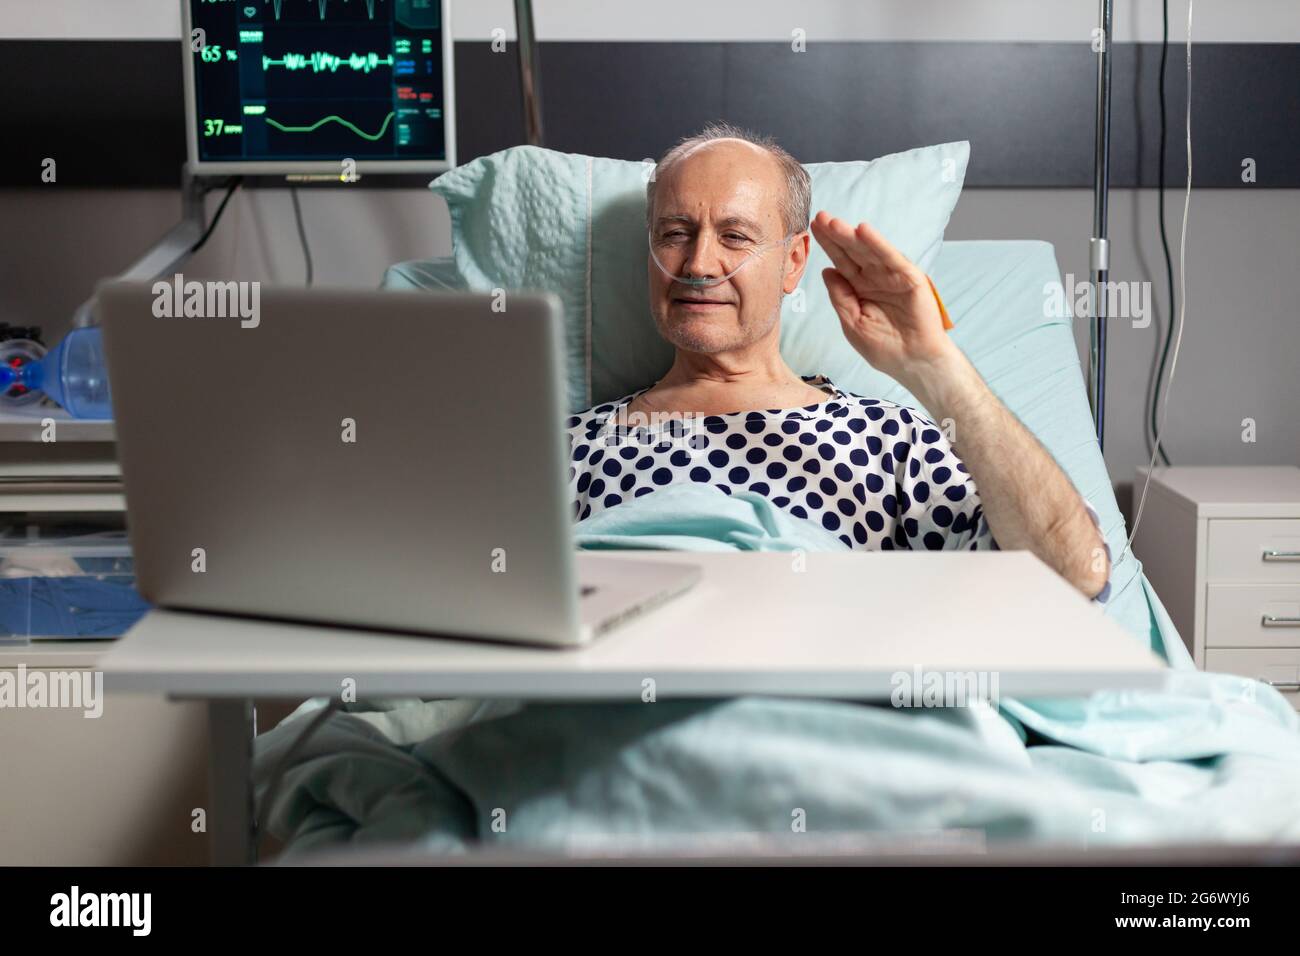 Ritratto dell'uomo anziano che saluta la famiglia a una macchina fotografica del portatile che si trova nel letto dell'ospedale, dopo la diagnosi della malattia, che respira con il tubo dell'ossigeno. Moderno eqipment per il monitoraggio della frequenza cardiaca paciente durante il recupero. Foto Stock